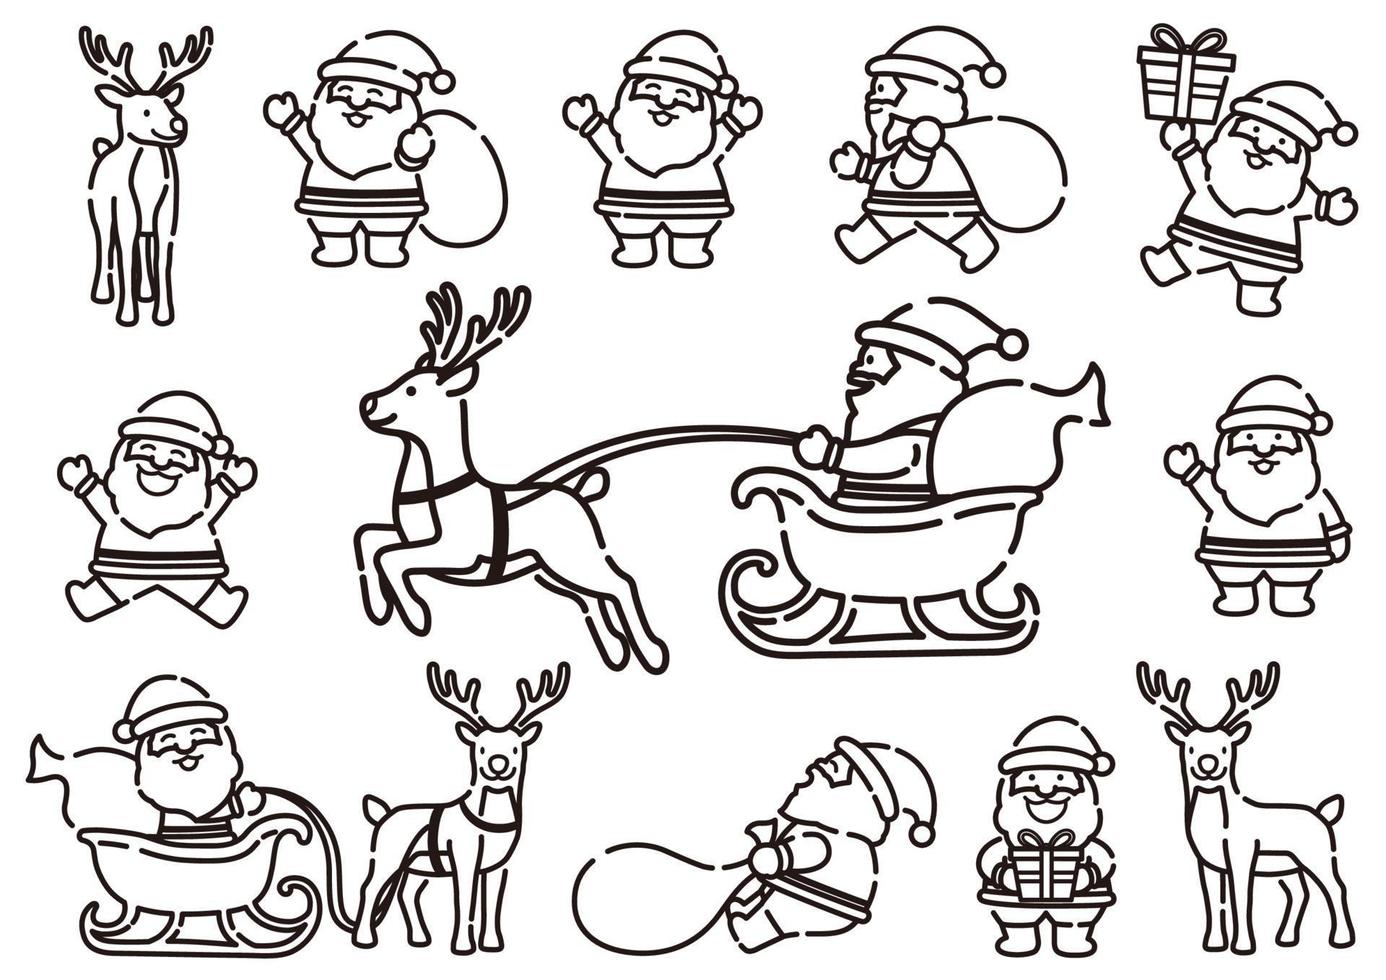 grappige cartoonachtige kerstman en rendieren lijntekening in dynamische poses, vectorillustratie geïsoleerd op een witte achtergrond. vector